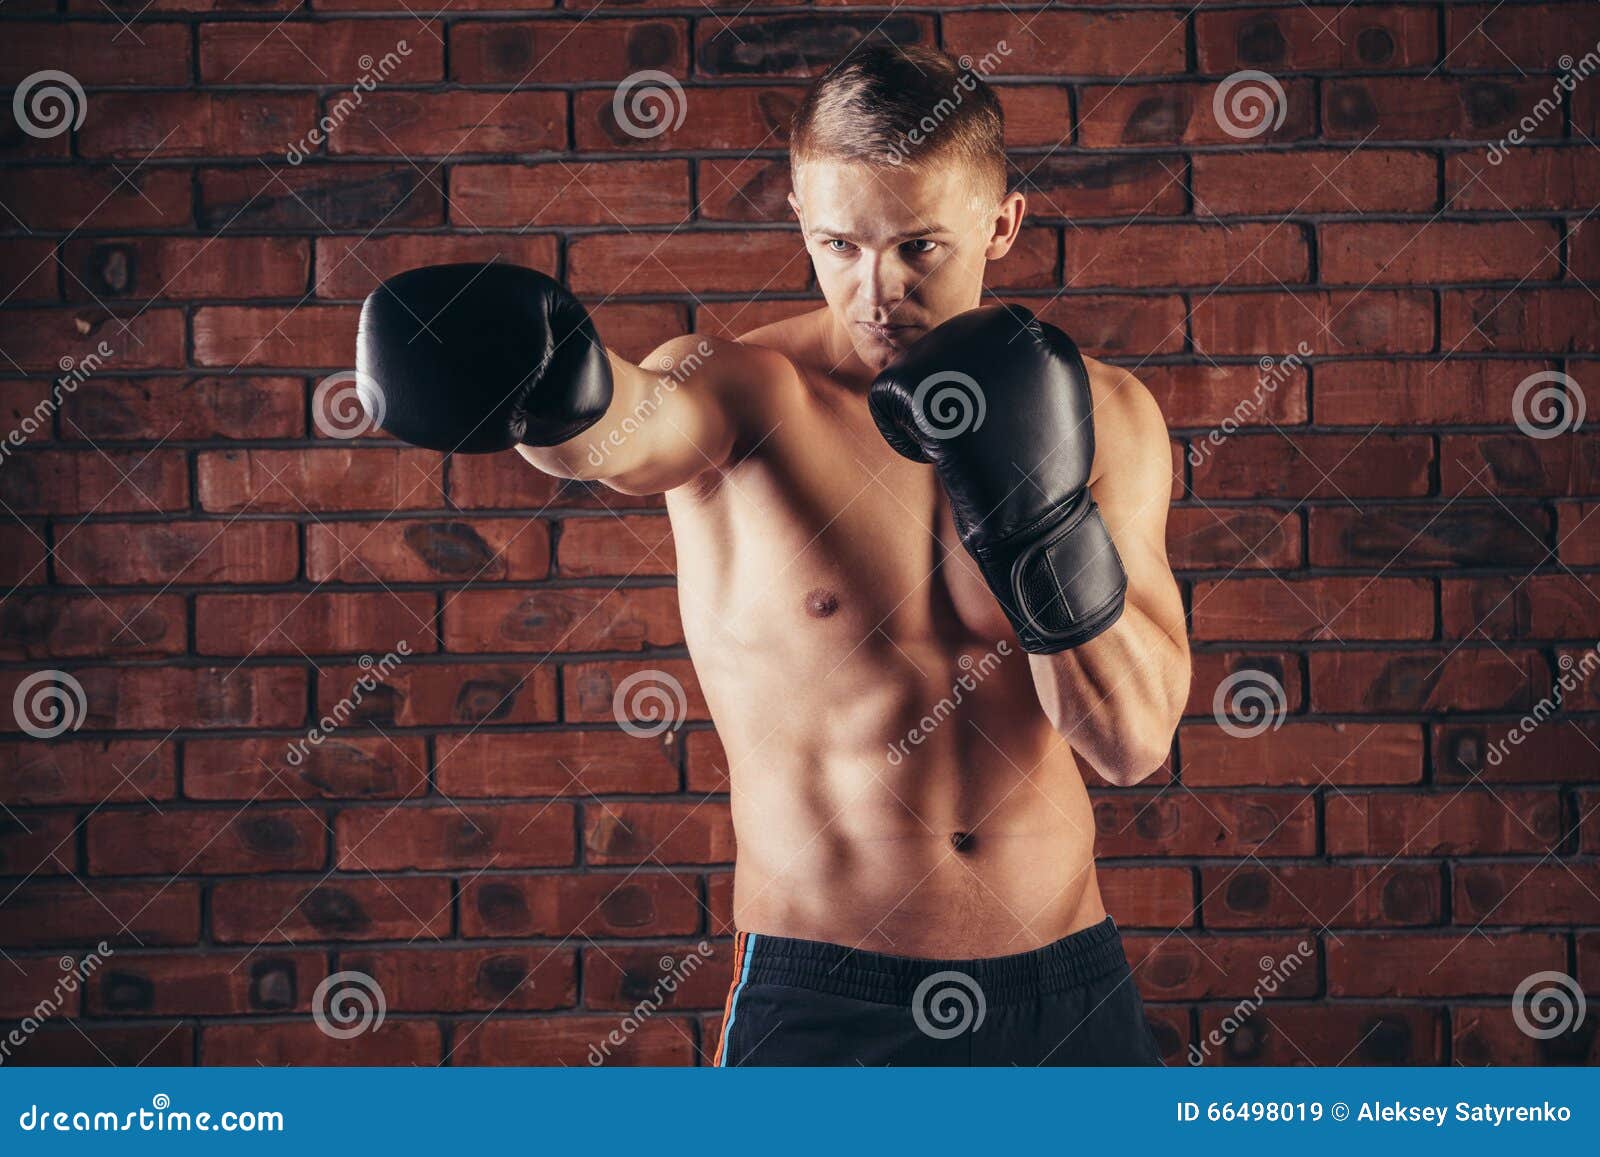 Bộ sưu tập pose boxing phong cách chuyên nghiệp